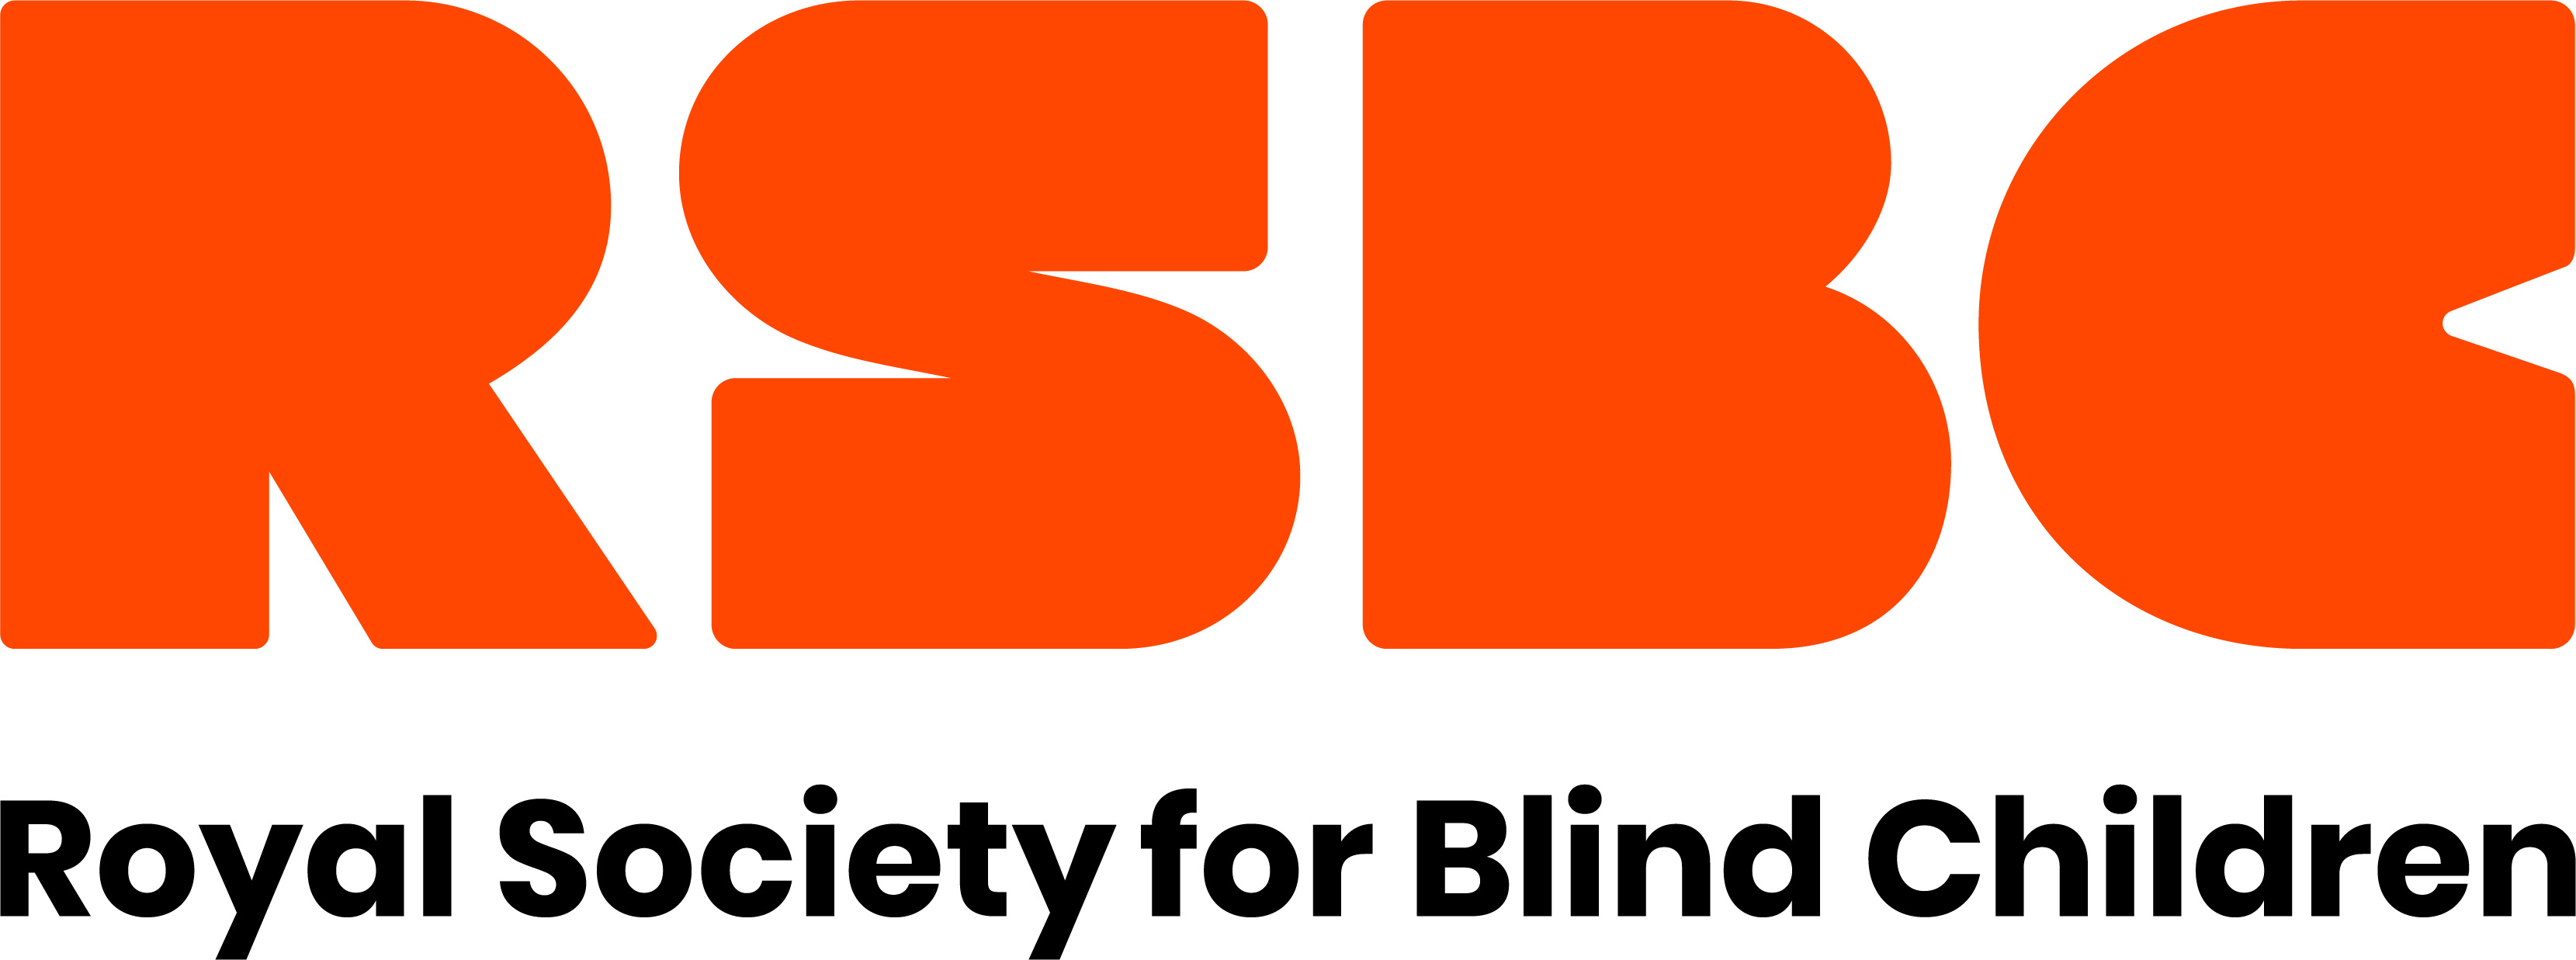 Royal society for Blind Children (RSBC)